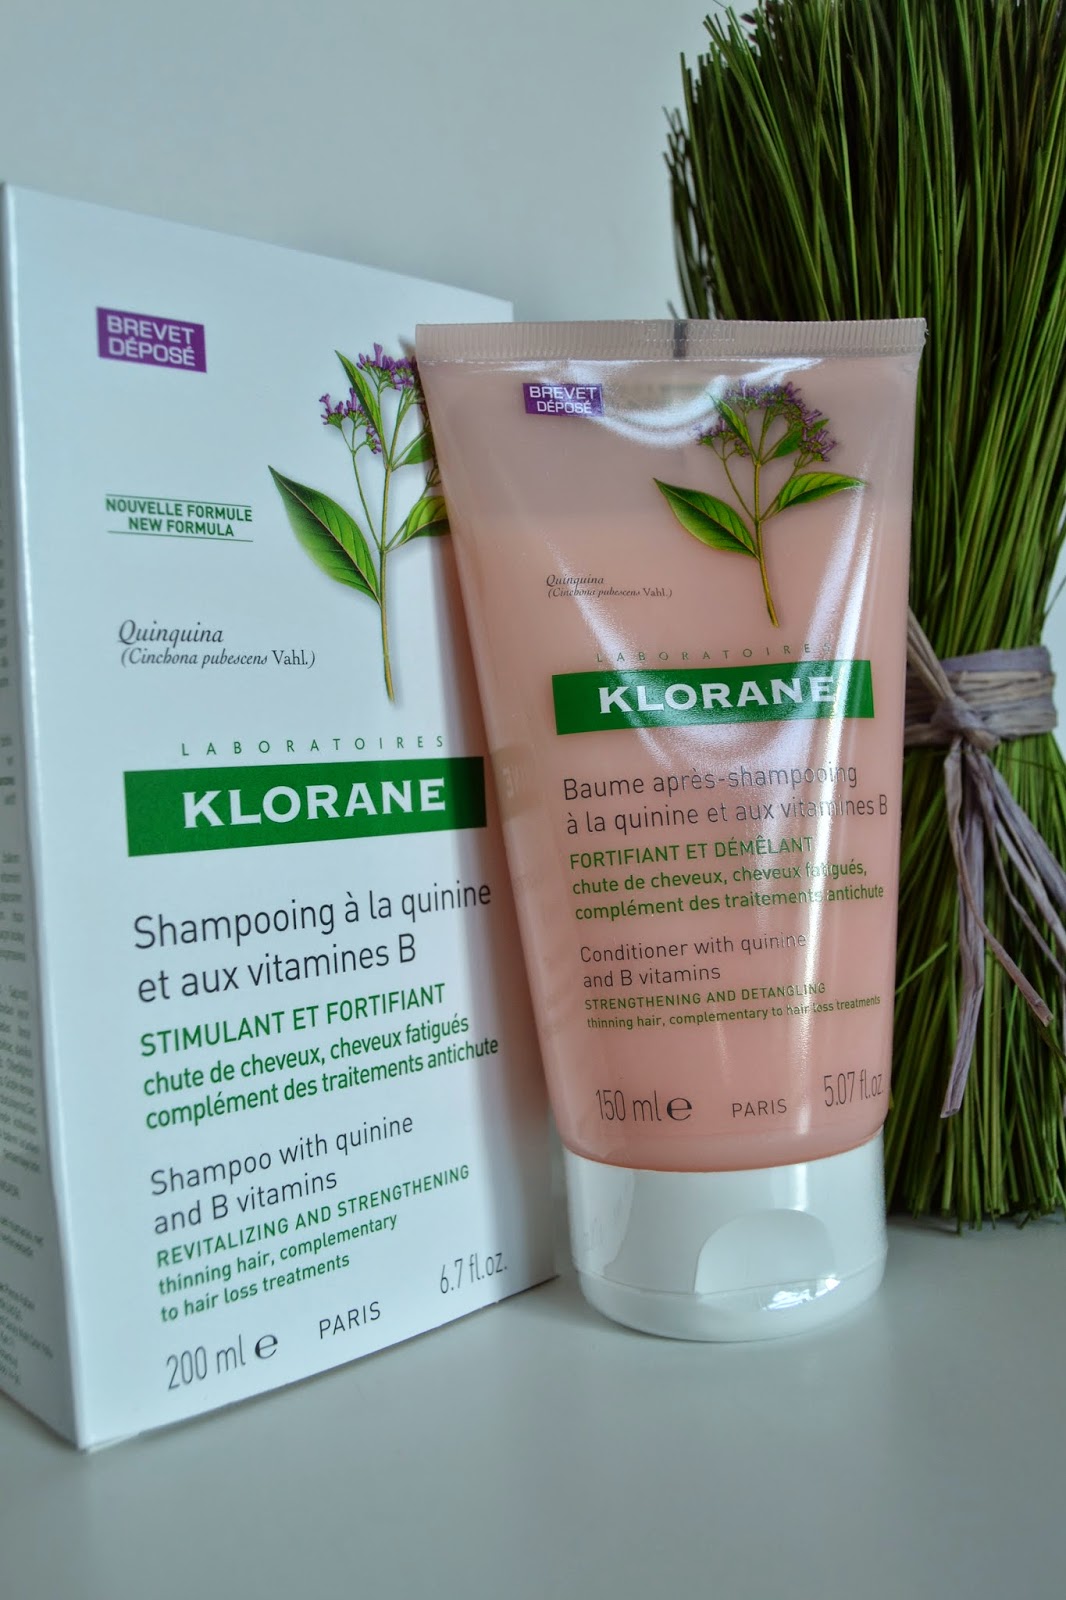 klorane kullanıcı yorumları - klorane şampuan - kinin maddesi nedir - b vitaminli şampuan - kozmetik blogları - makyaj blogları -kloran nerden alabilirim